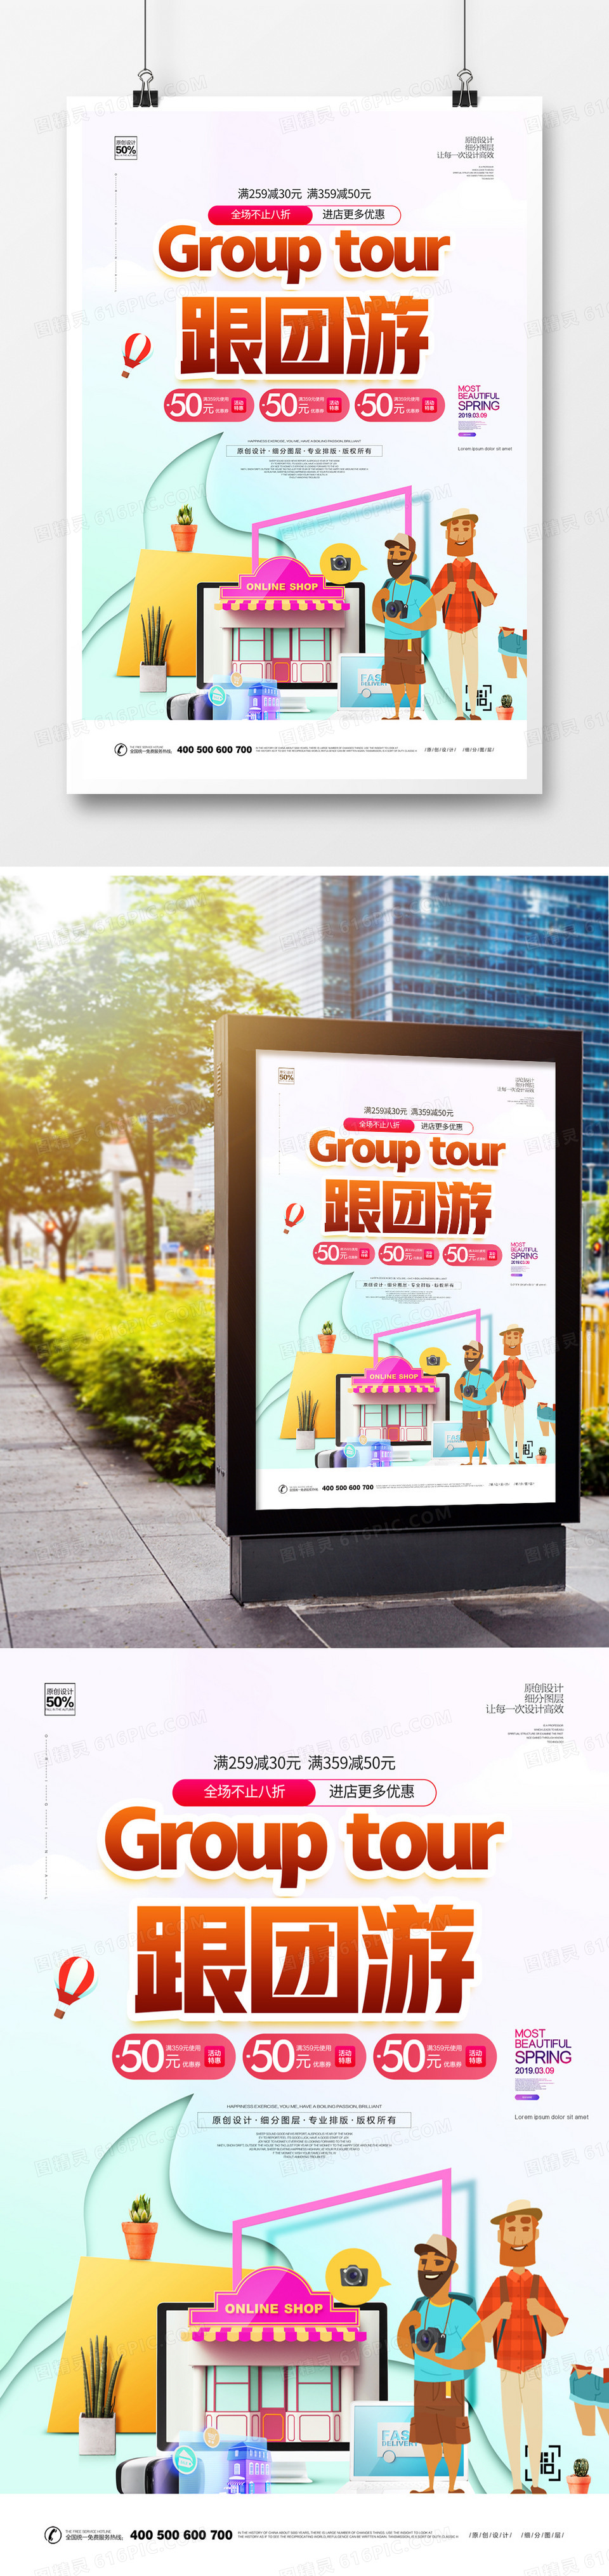 创意跟团游旅游宣传海报广告模板